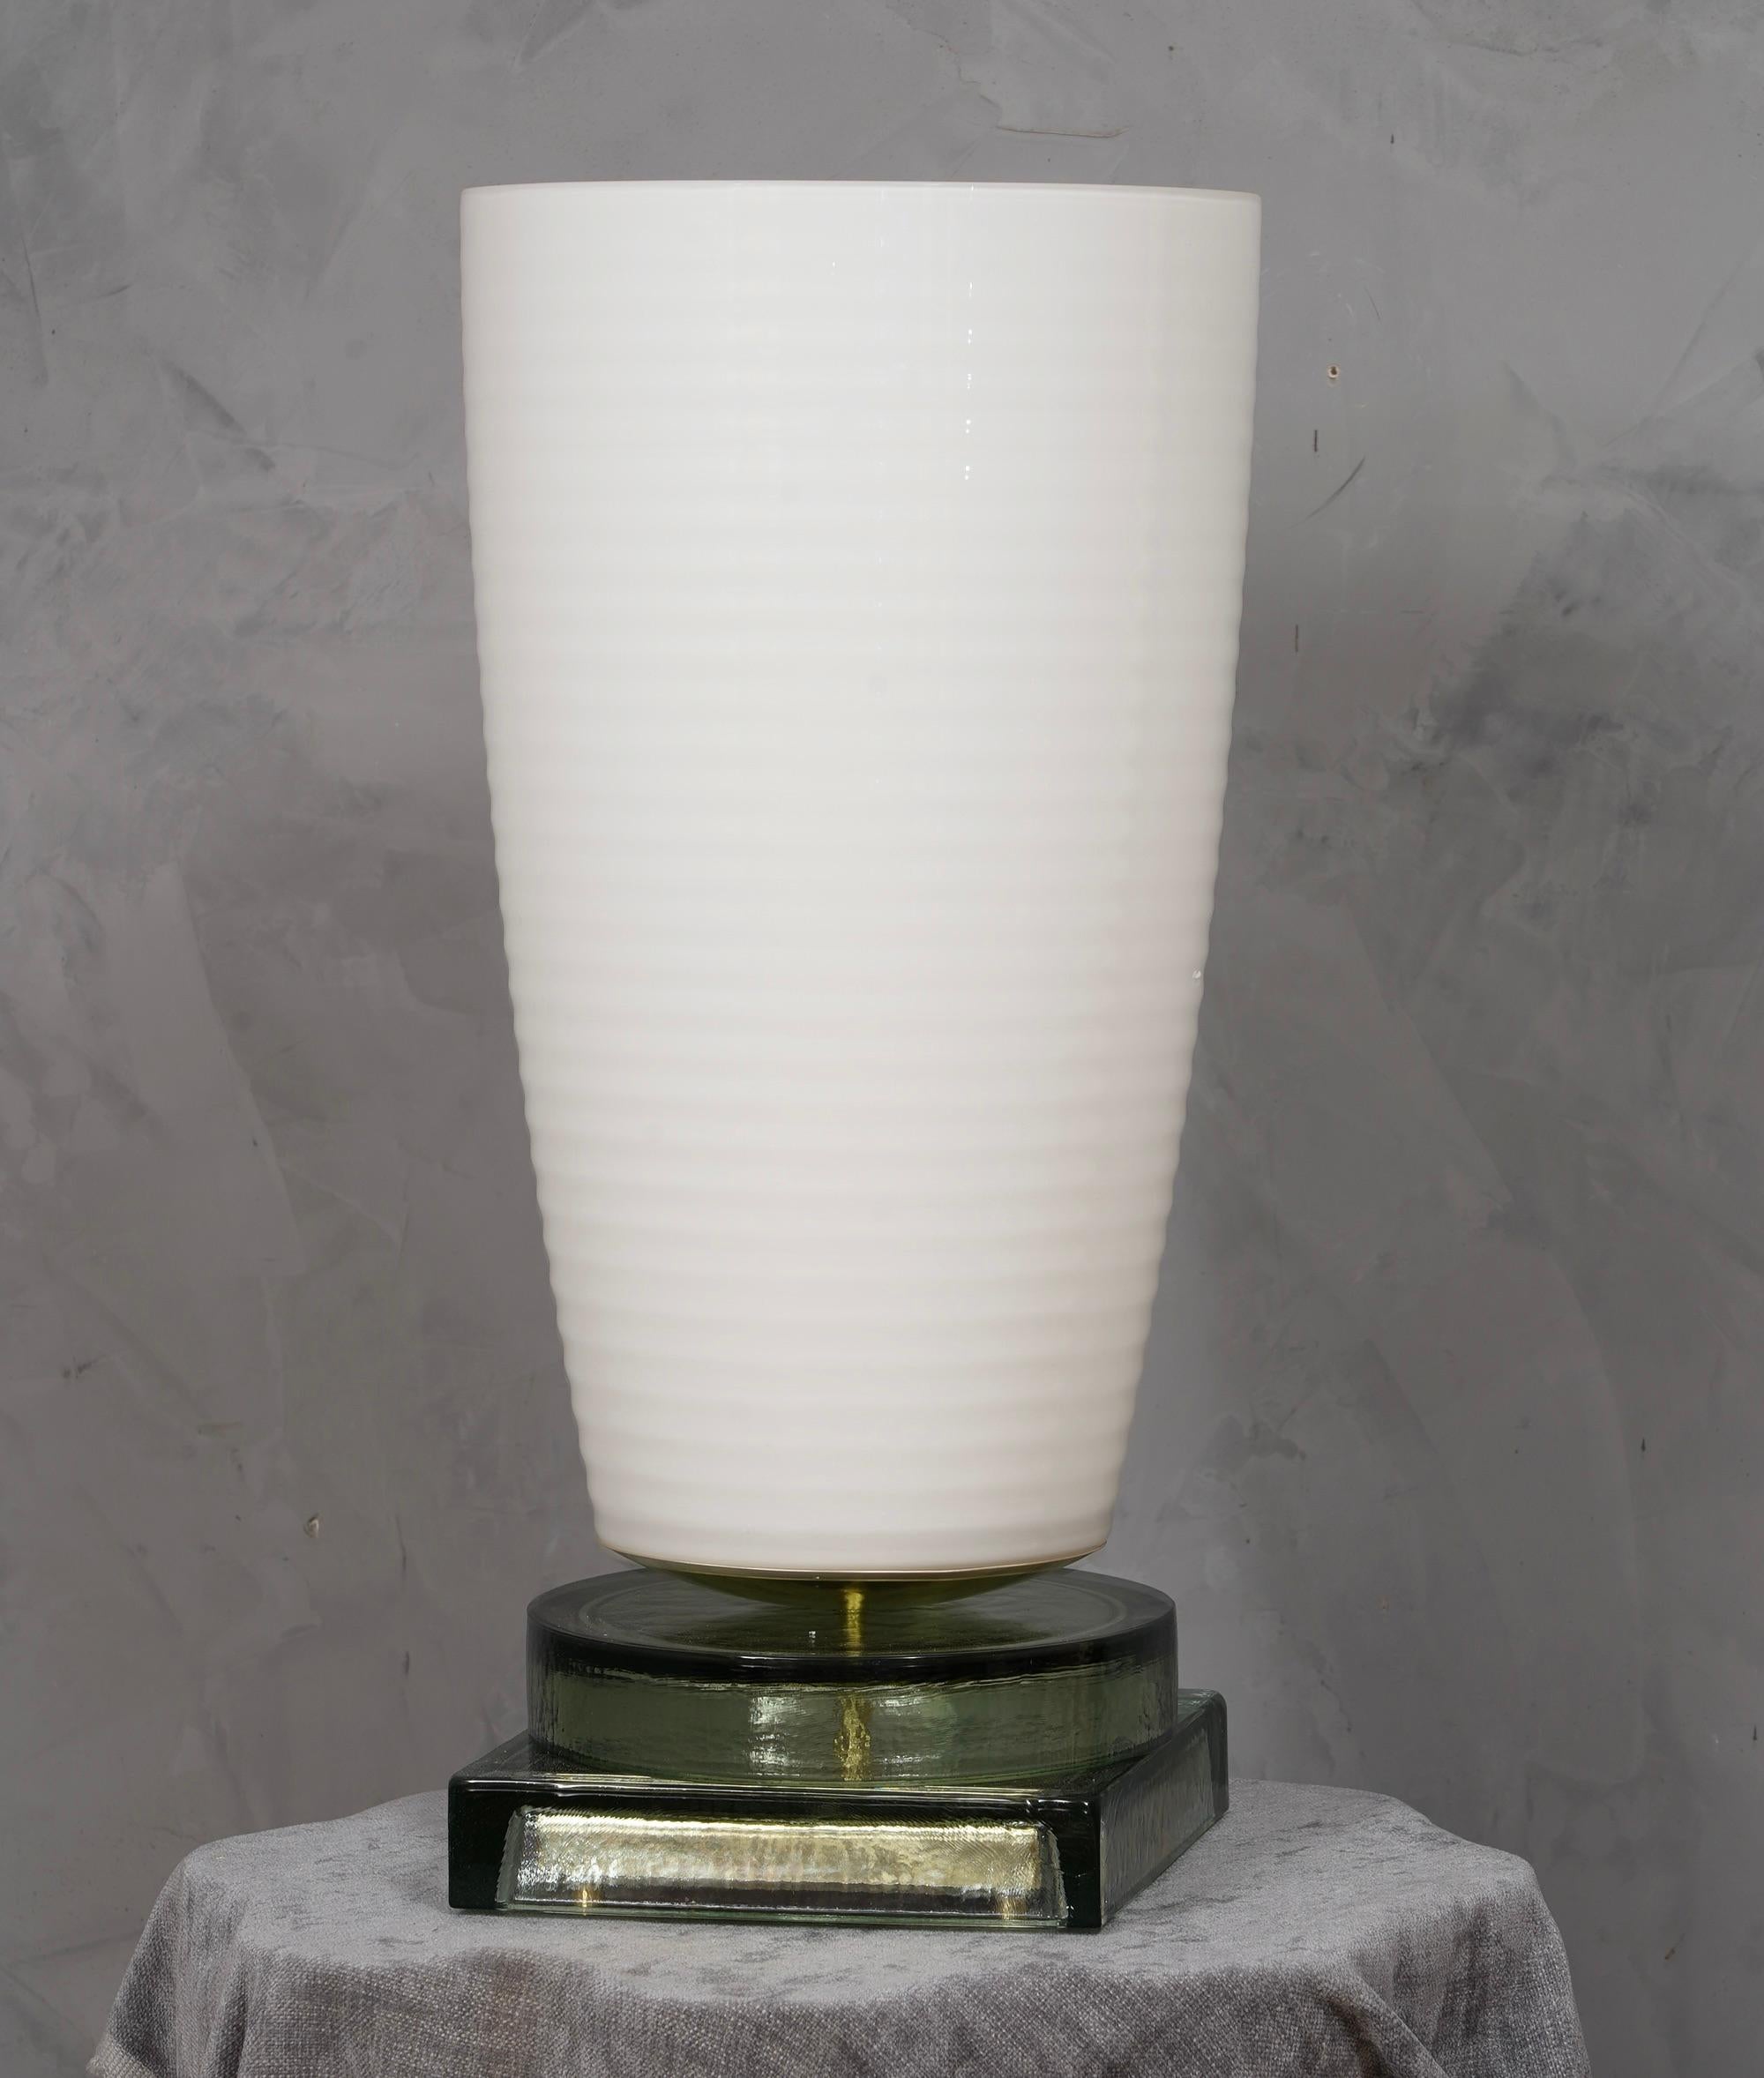 Kostbares und einzigartiges mundgeblasenes weißes Murano-Glas, klassisches, aber originelles Design mit einem starken Kontrast zwischen der großen weißen Vase und dem transparenten Glasboden.

Die Lampe zeichnet sich durch eine große weiße Vase mit